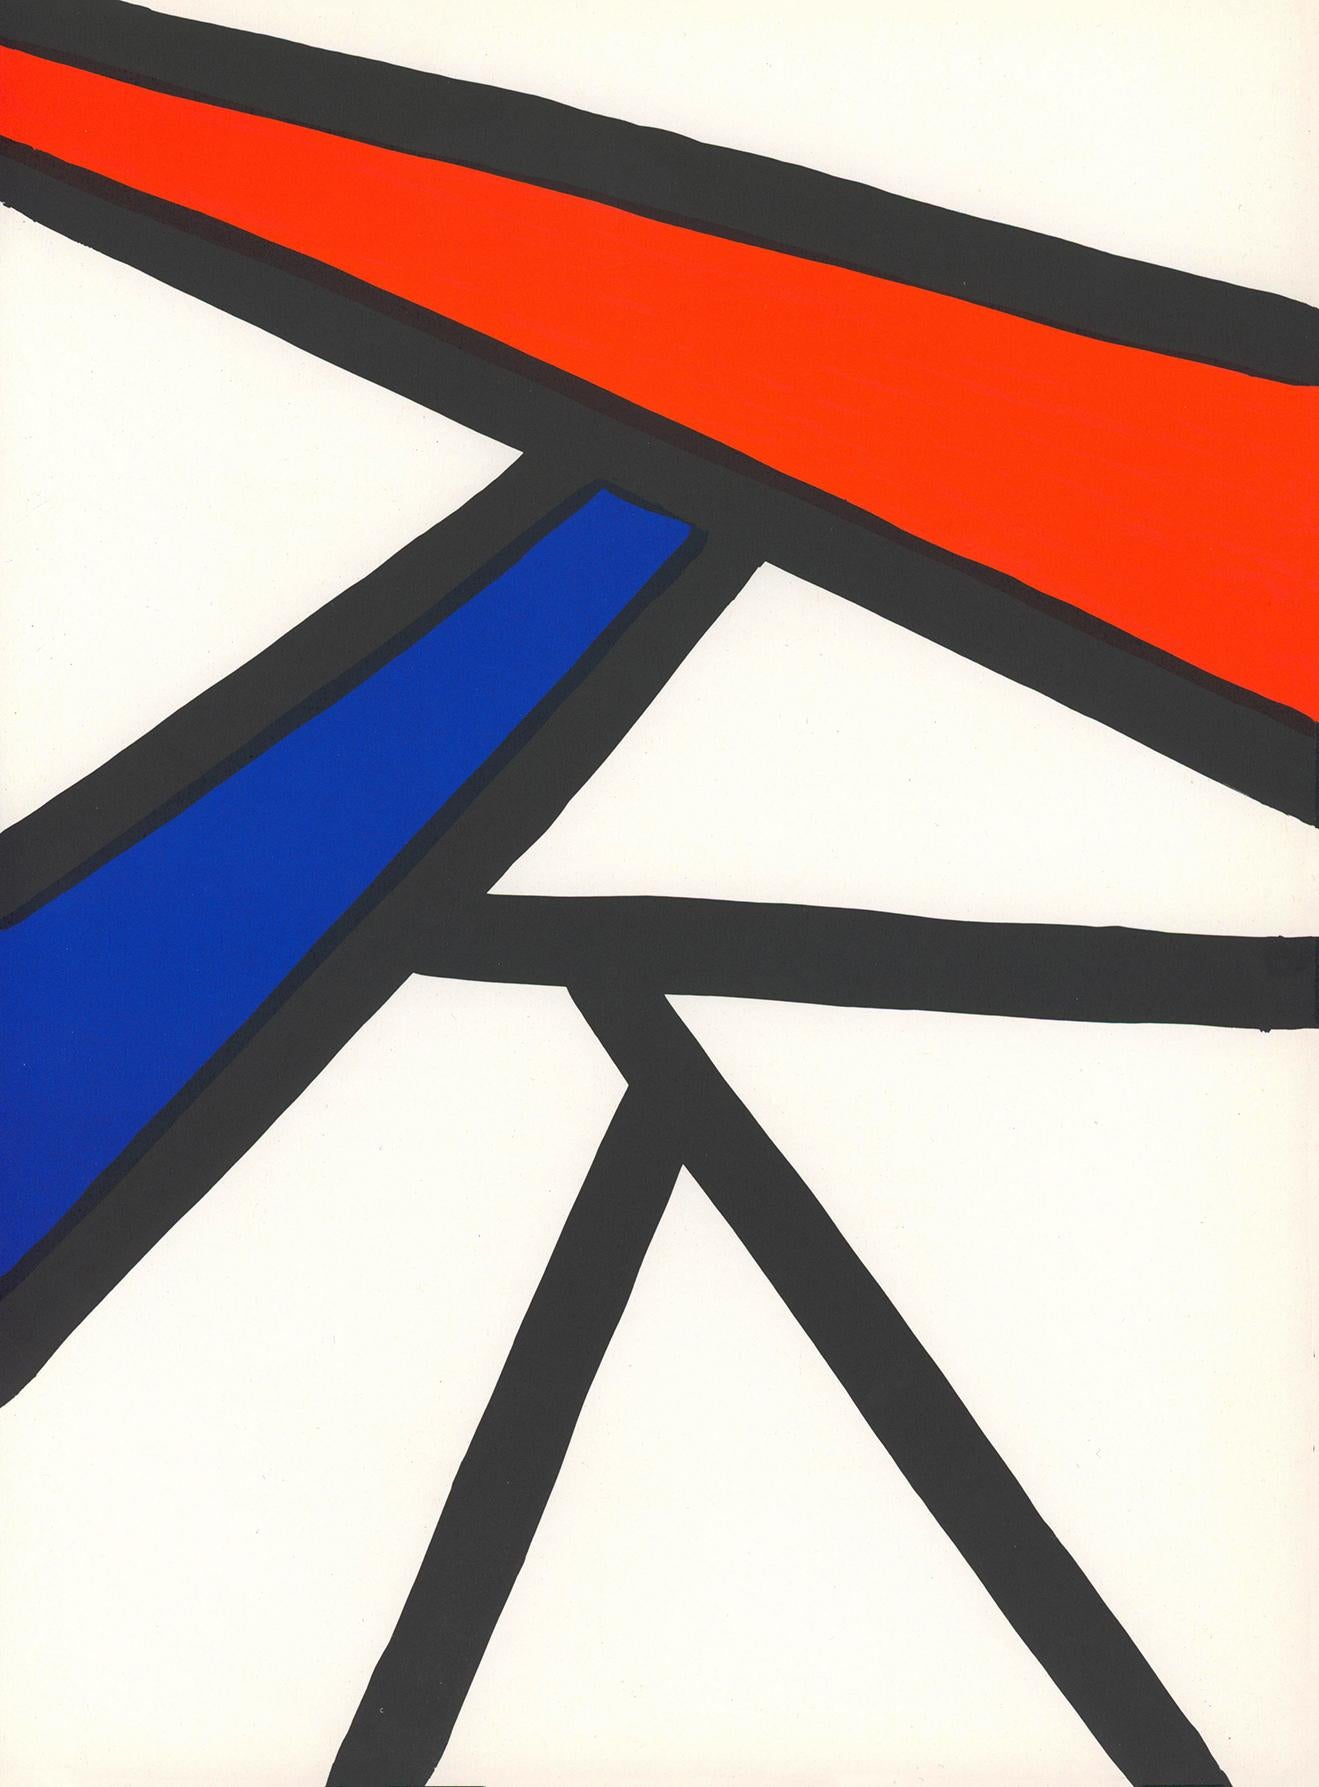 Alexander Calder Lithographie ca. 1967 aus Derrière le miroir:

Farblithographie; 15 x 11 Zoll.
Sehr guter Gesamtzustand; gut präpariert. 
Unsigniert aus einer Auflage von unbekannt.
Von: Derrière le miroir Gedruckt in Frankreich ca. 1967.